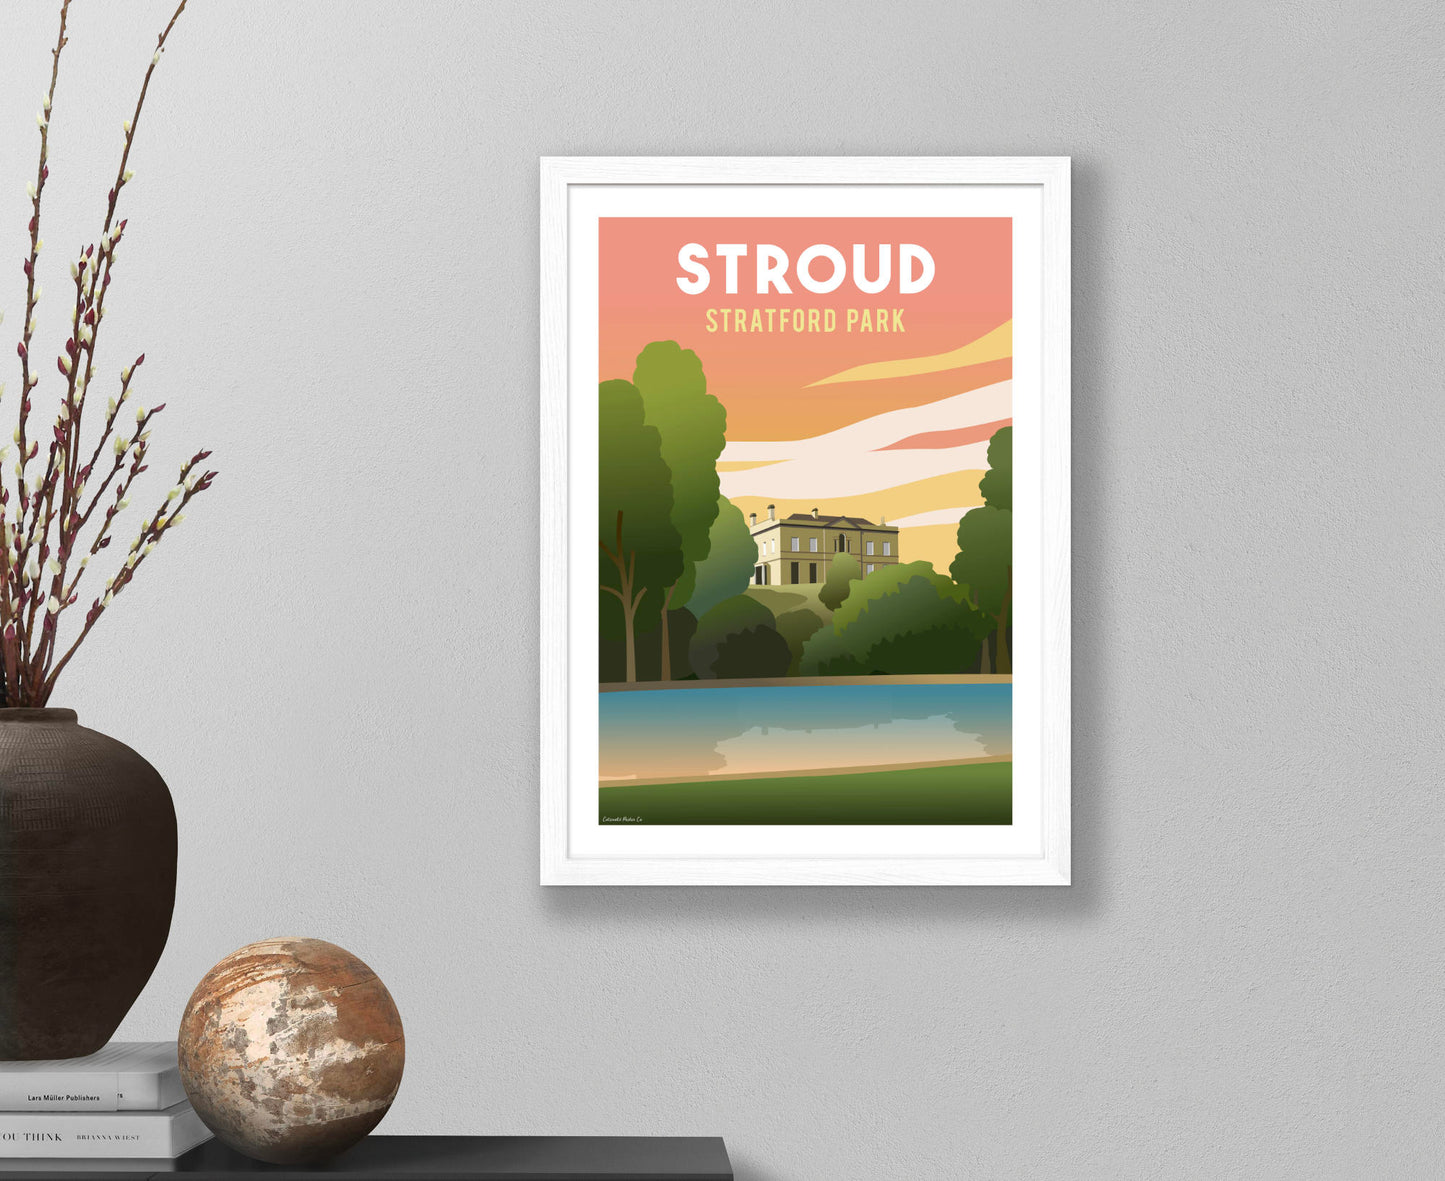 Stroud Stratford Park Poster in white frame